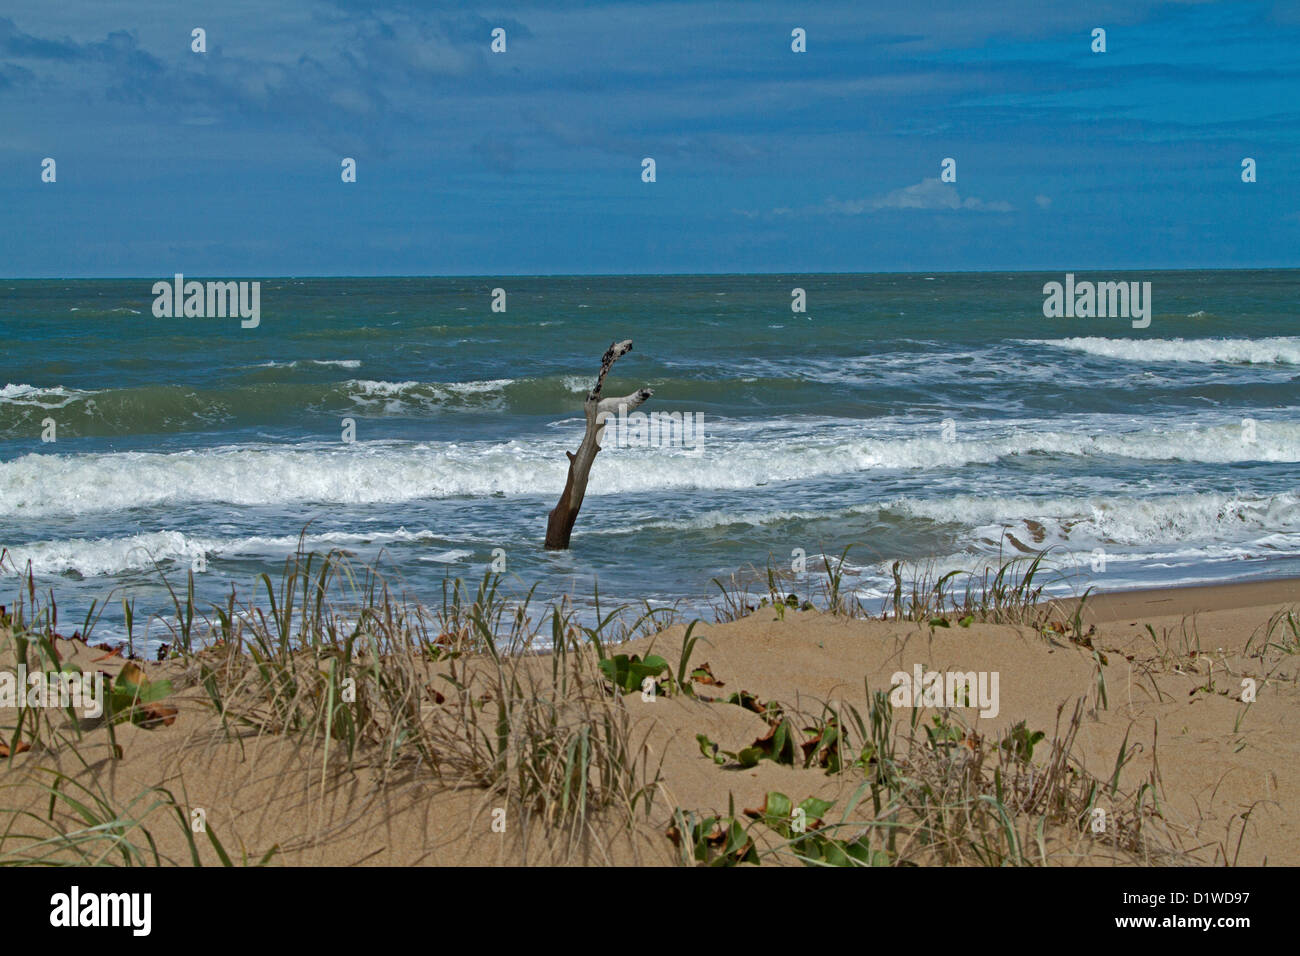 Les dunes de la plage avec grand arbre mort dans les eaux bleues de l'océan Pacifique - preuve visible de la montée du niveau de la mer et le changement climatique Banque D'Images